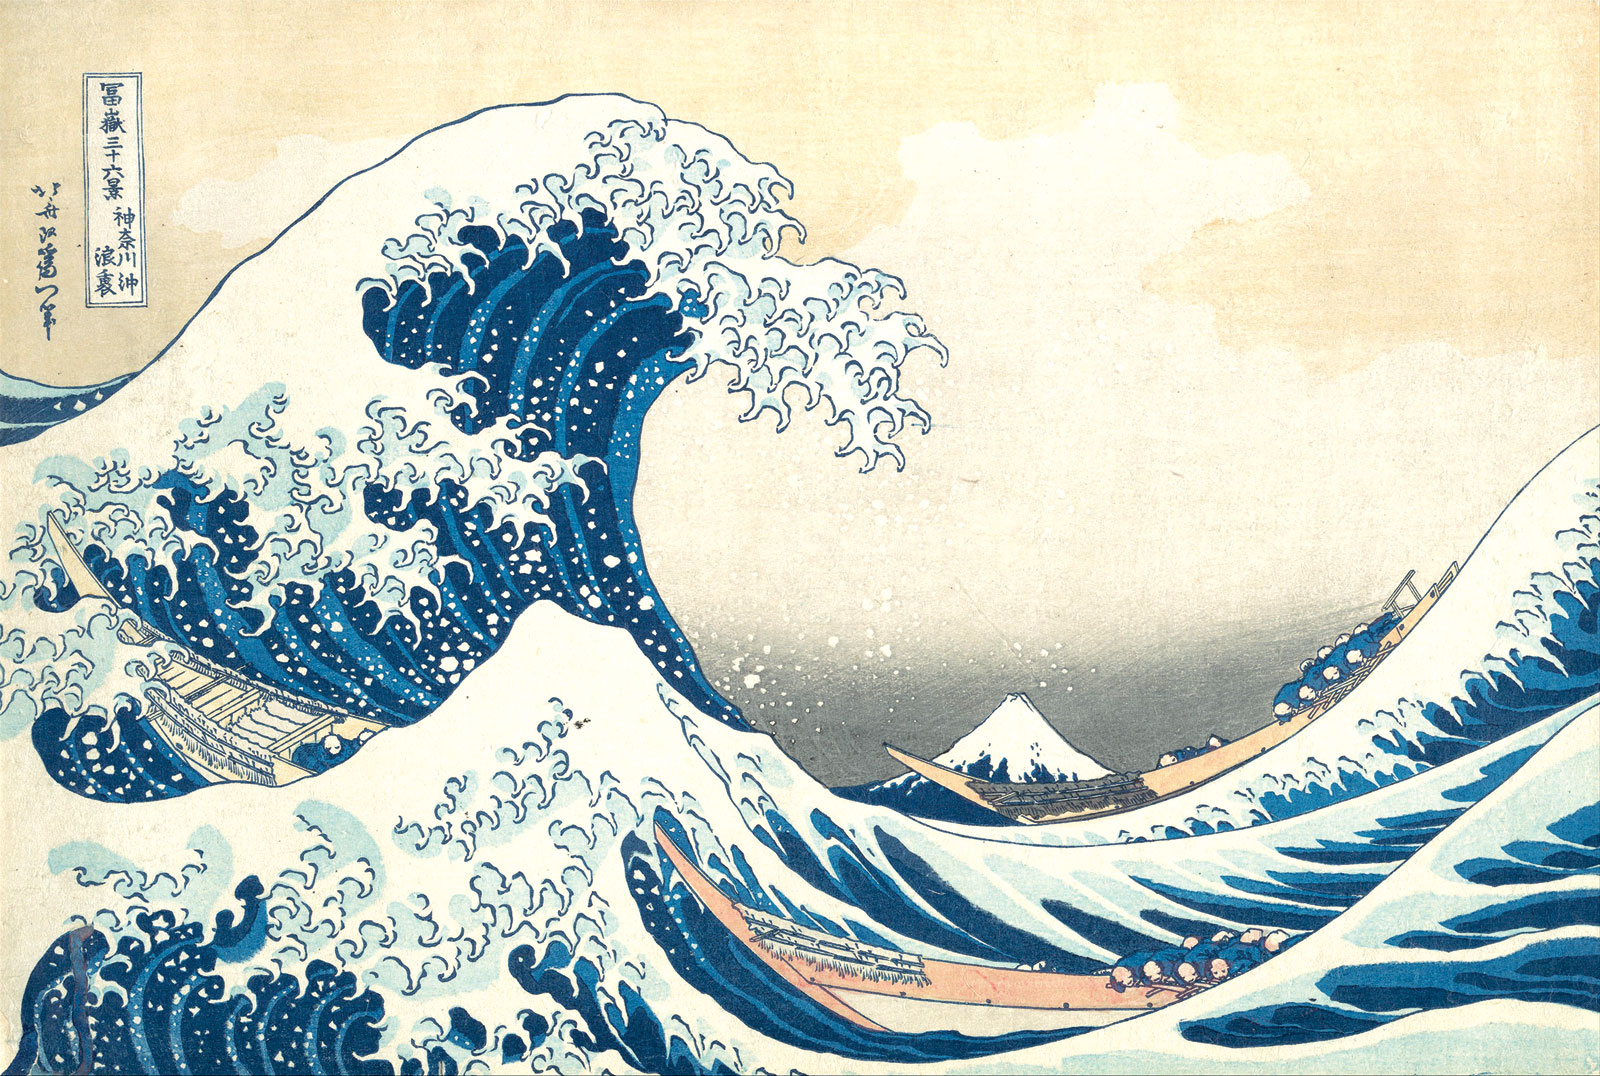 Katsushika Hokusai, *La gran ola de Kanagawa*, 1831. The Metropolitan Museum of Art